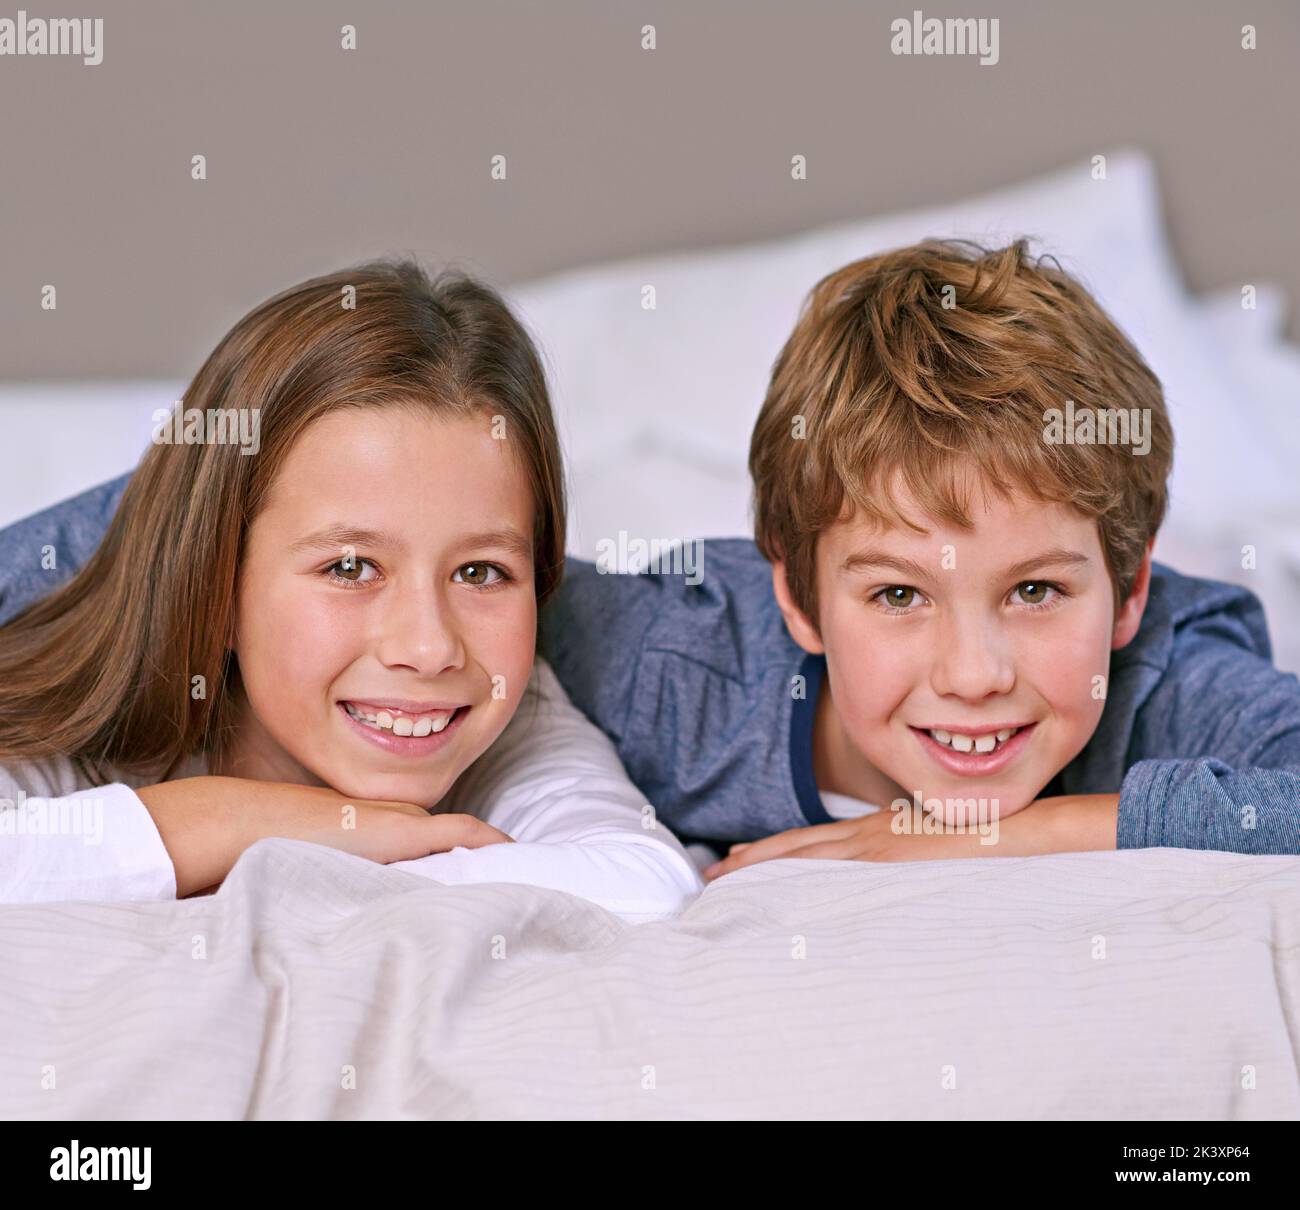 Gemeinsam aufwachsen. Porträt eines Bruders und einer Schwester, die zu Hause auf einem Bett liegen. Stockfoto